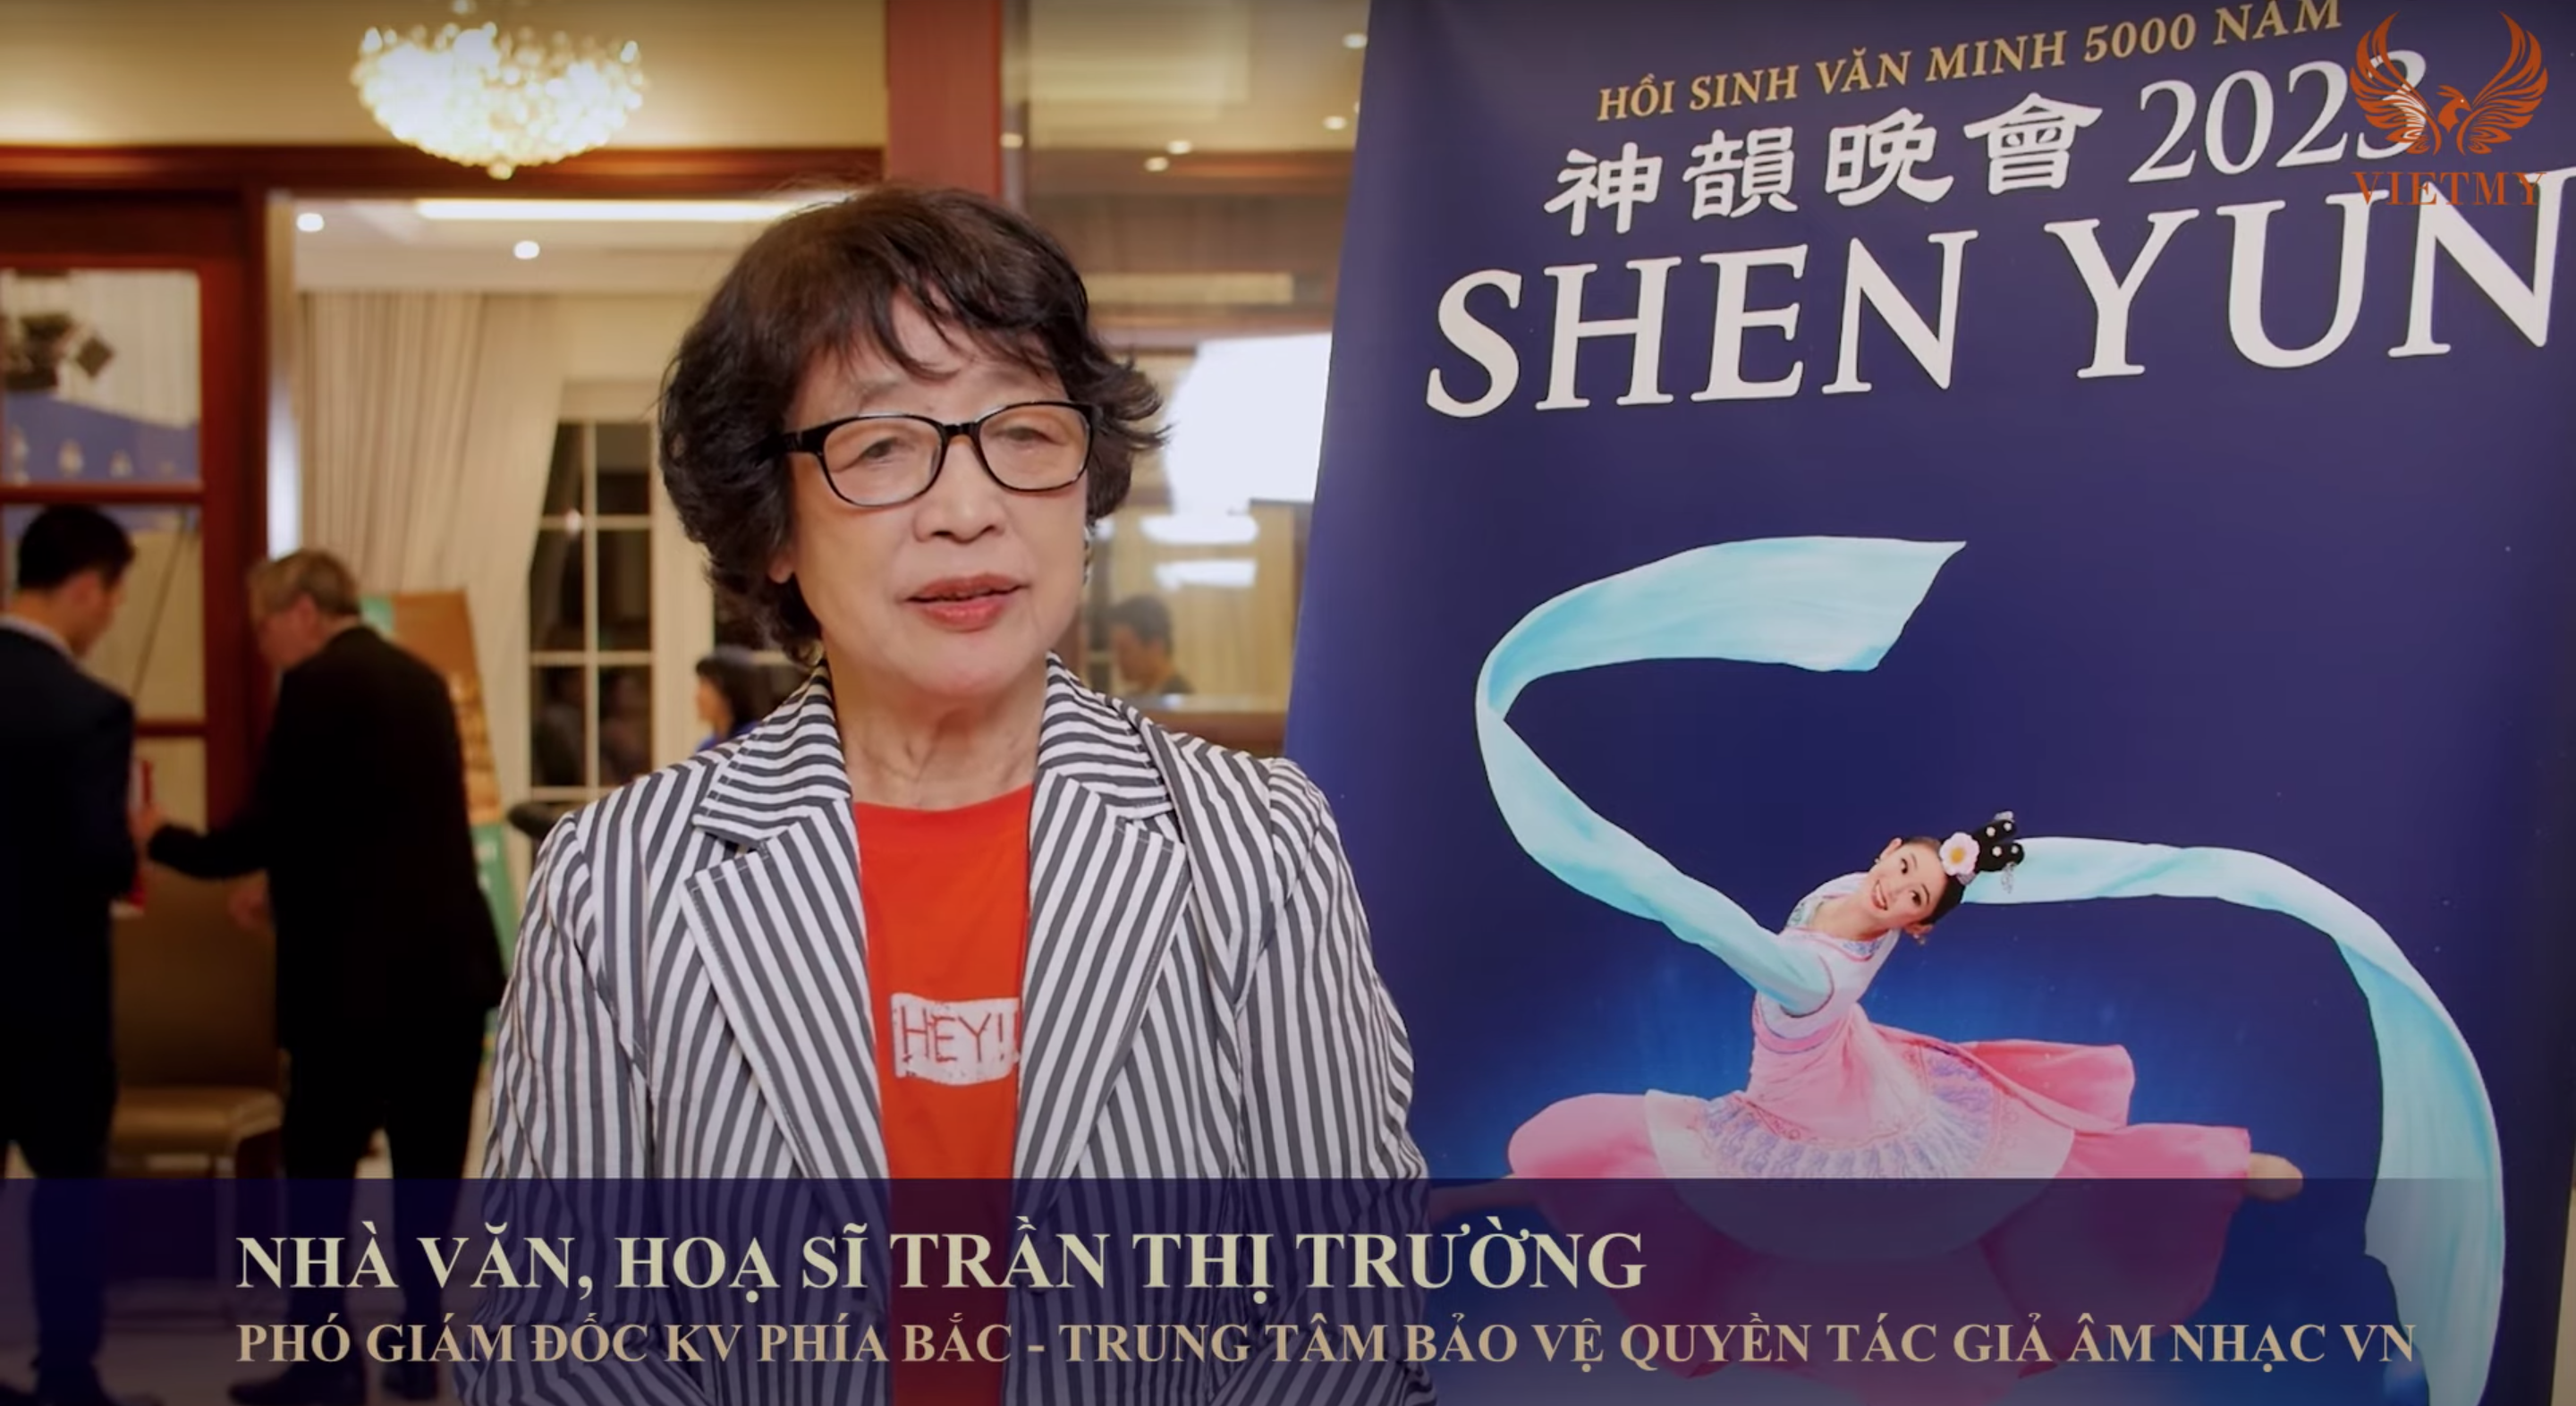 Yếu tố “Thần” làm nên sự thành công khác biệt của Shen Yun